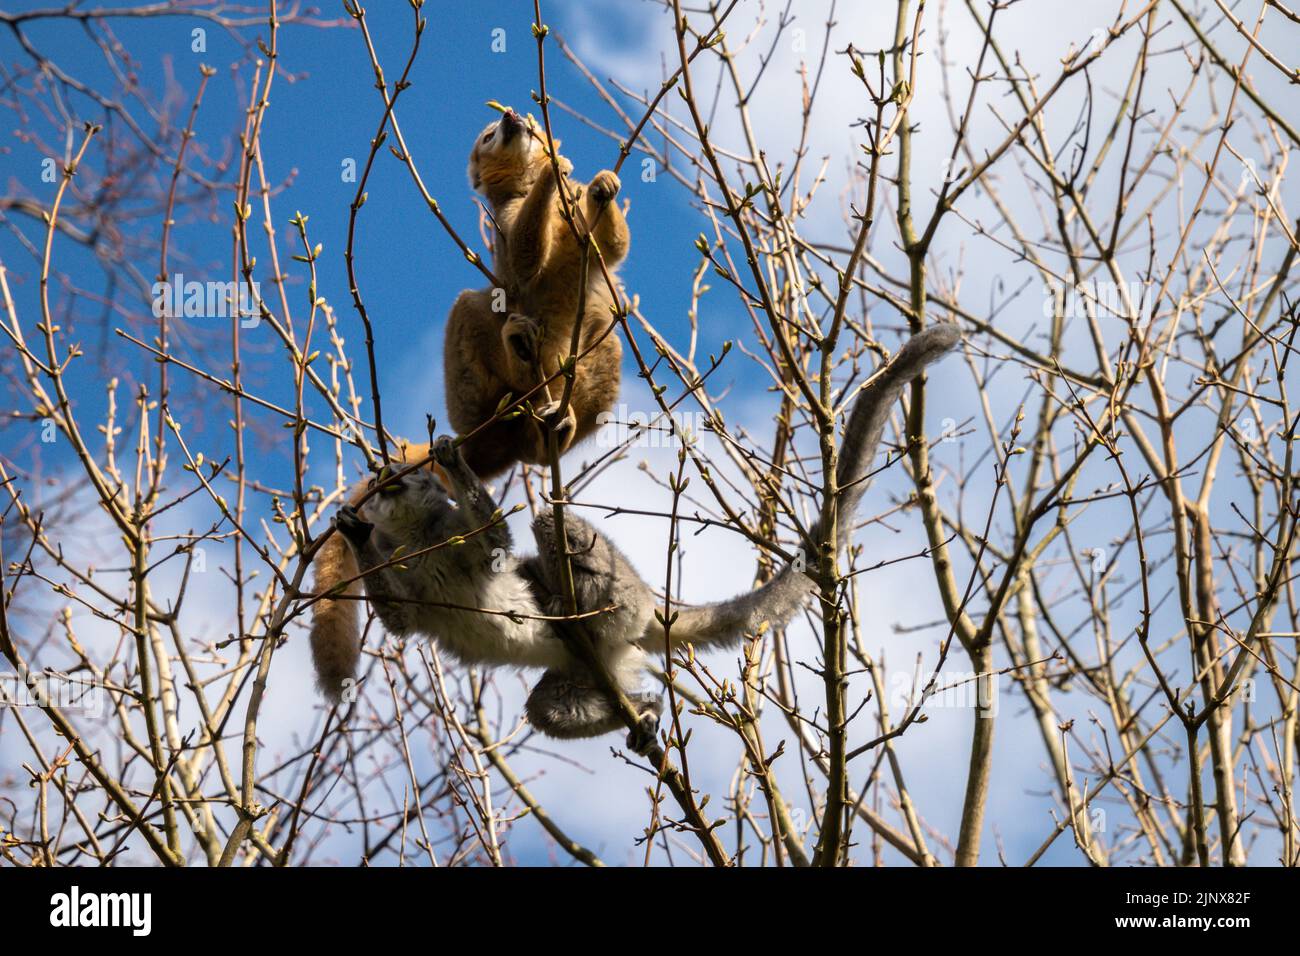 Limur incoronato che arrampica su un albero alla ricerca di cibo, lo zoo di Edimburgo Foto Stock